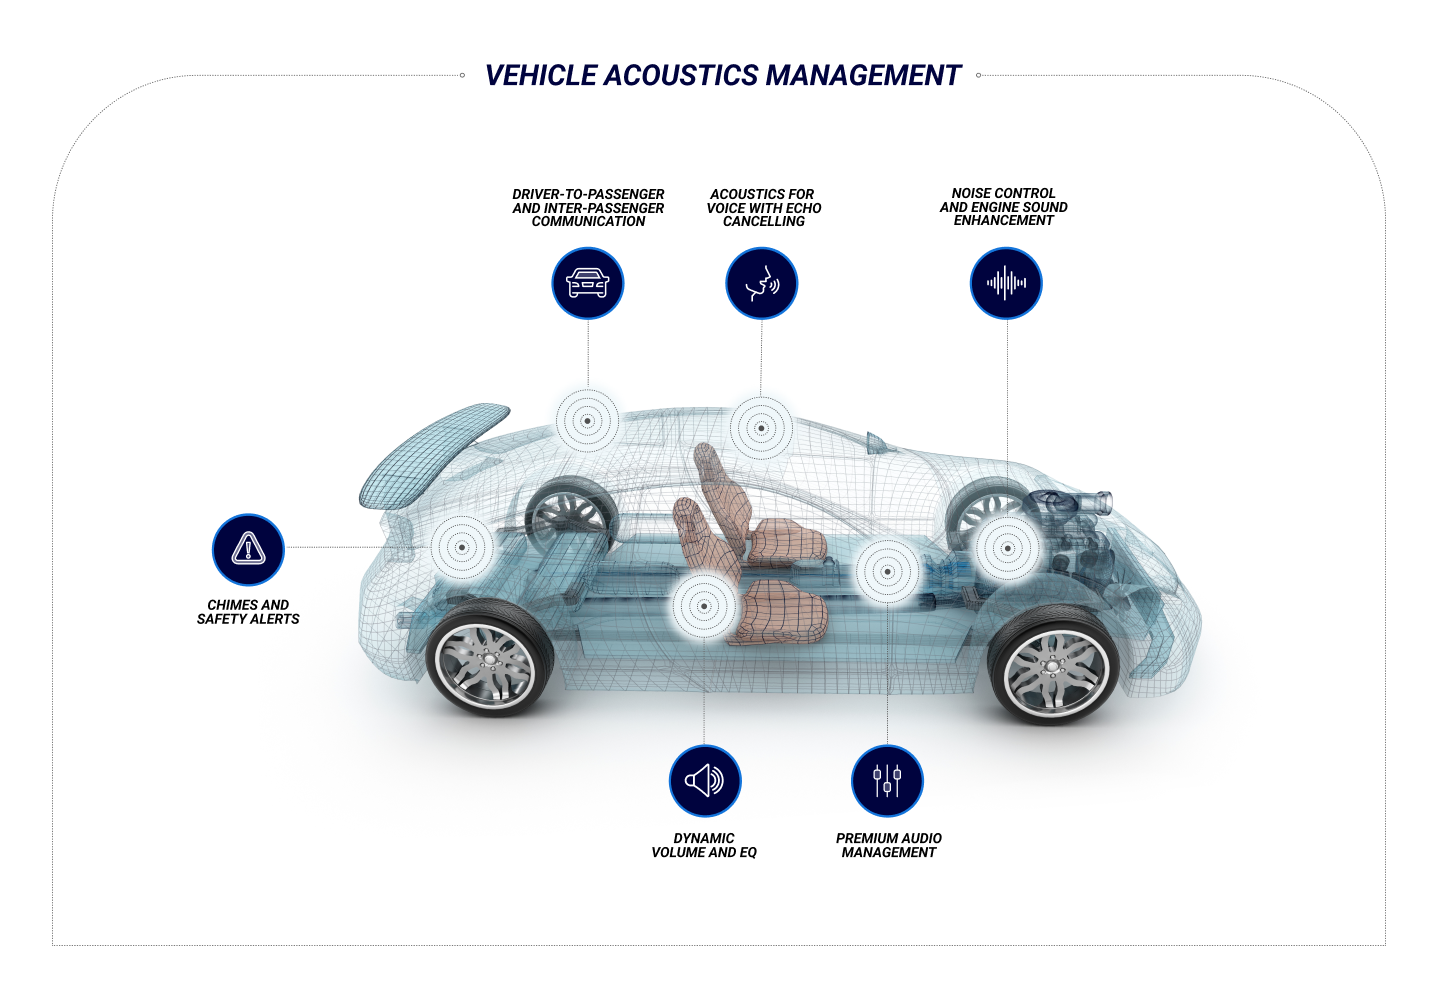 Vehicle Acoustics Management